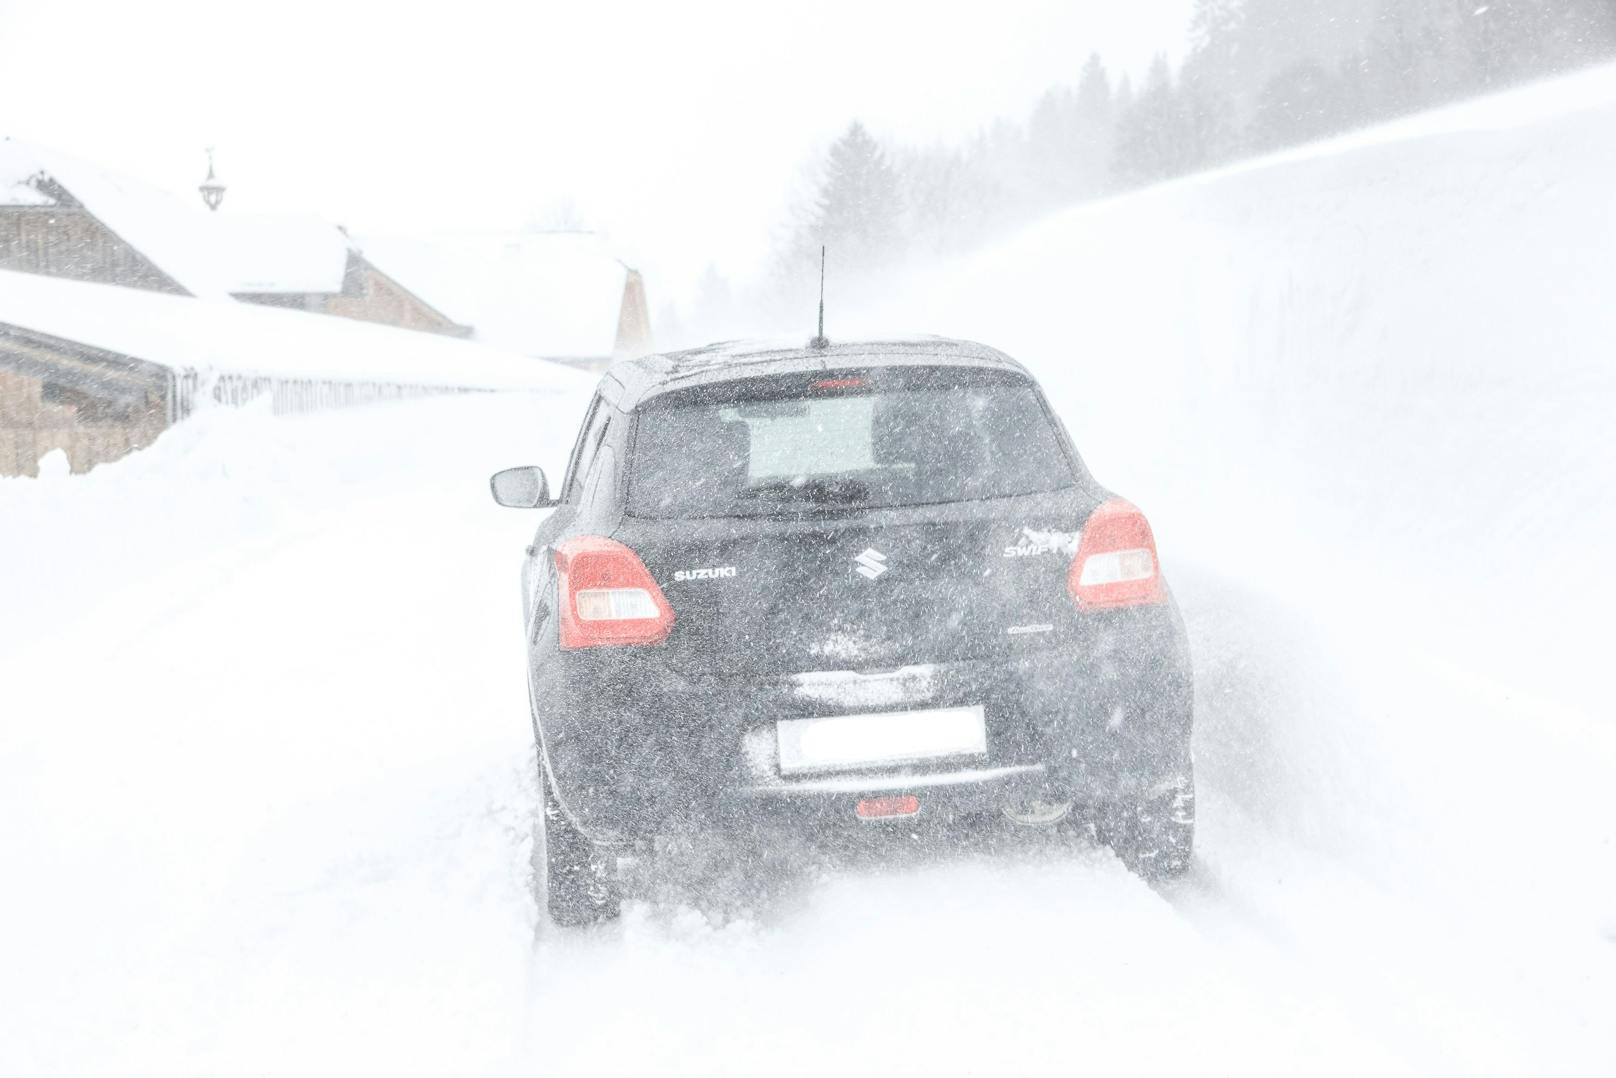 Straßensperren wegen Lawinengefahr nach heftigen Schneefällen in Osttirol. Archivbild.